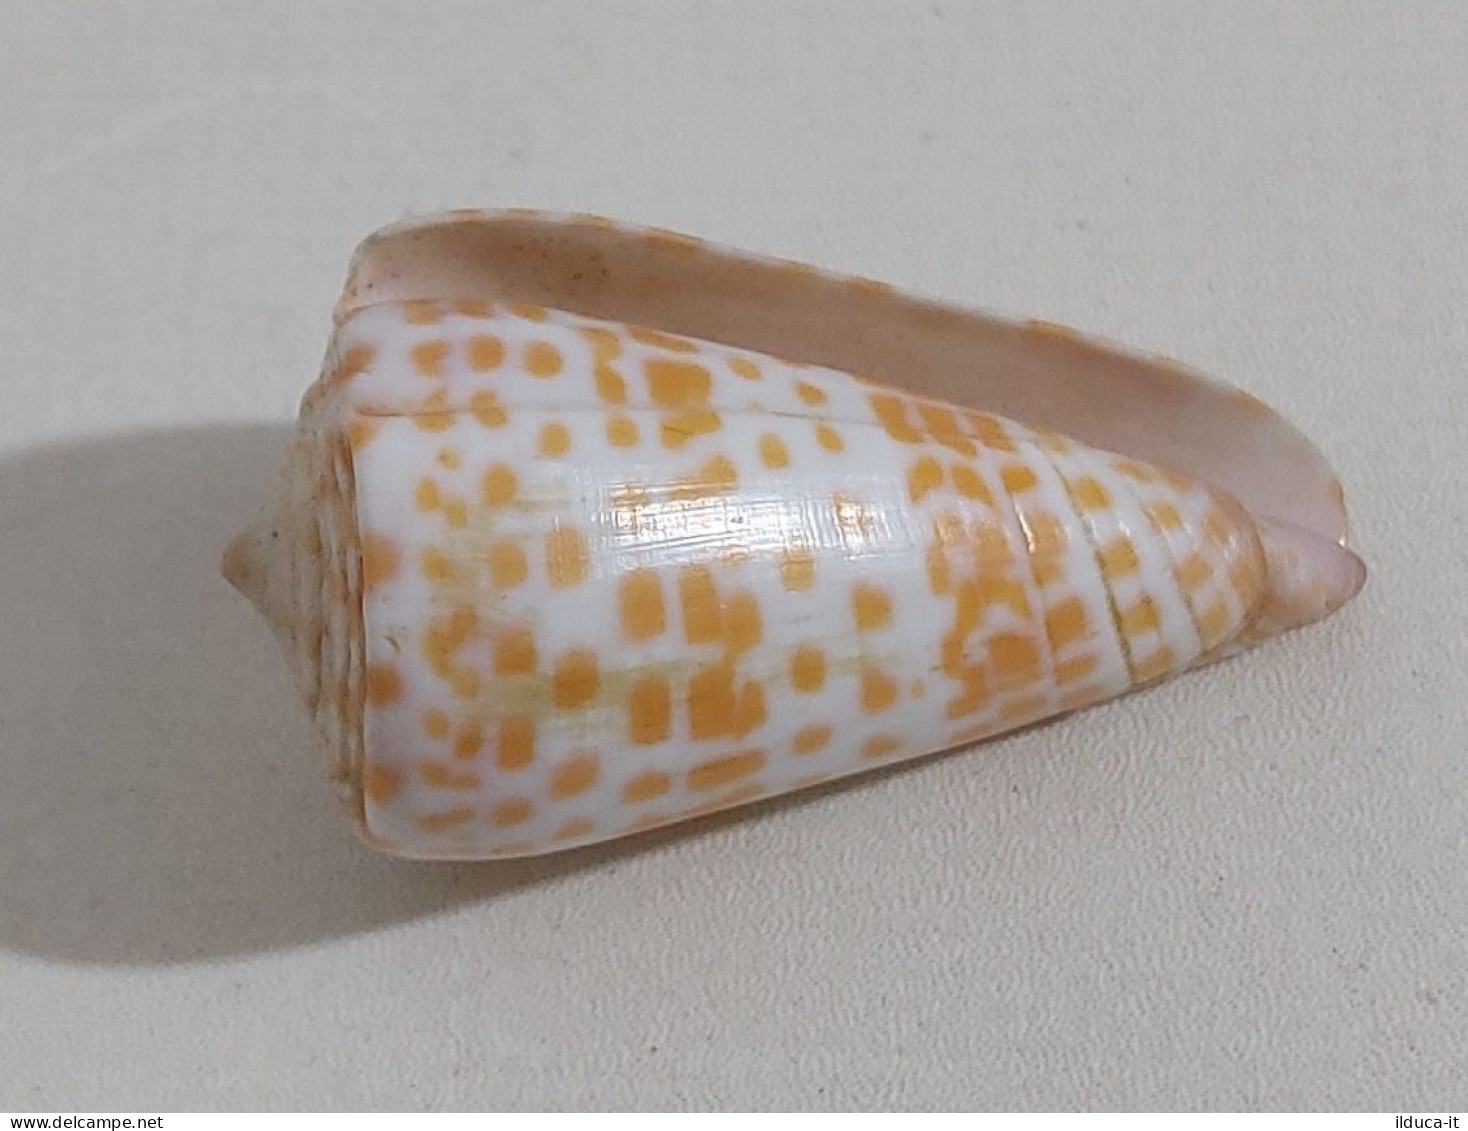 68353 Conchiglia Di Mare - Conus Tessulatus - 50 Mm - Seashells & Snail-shells